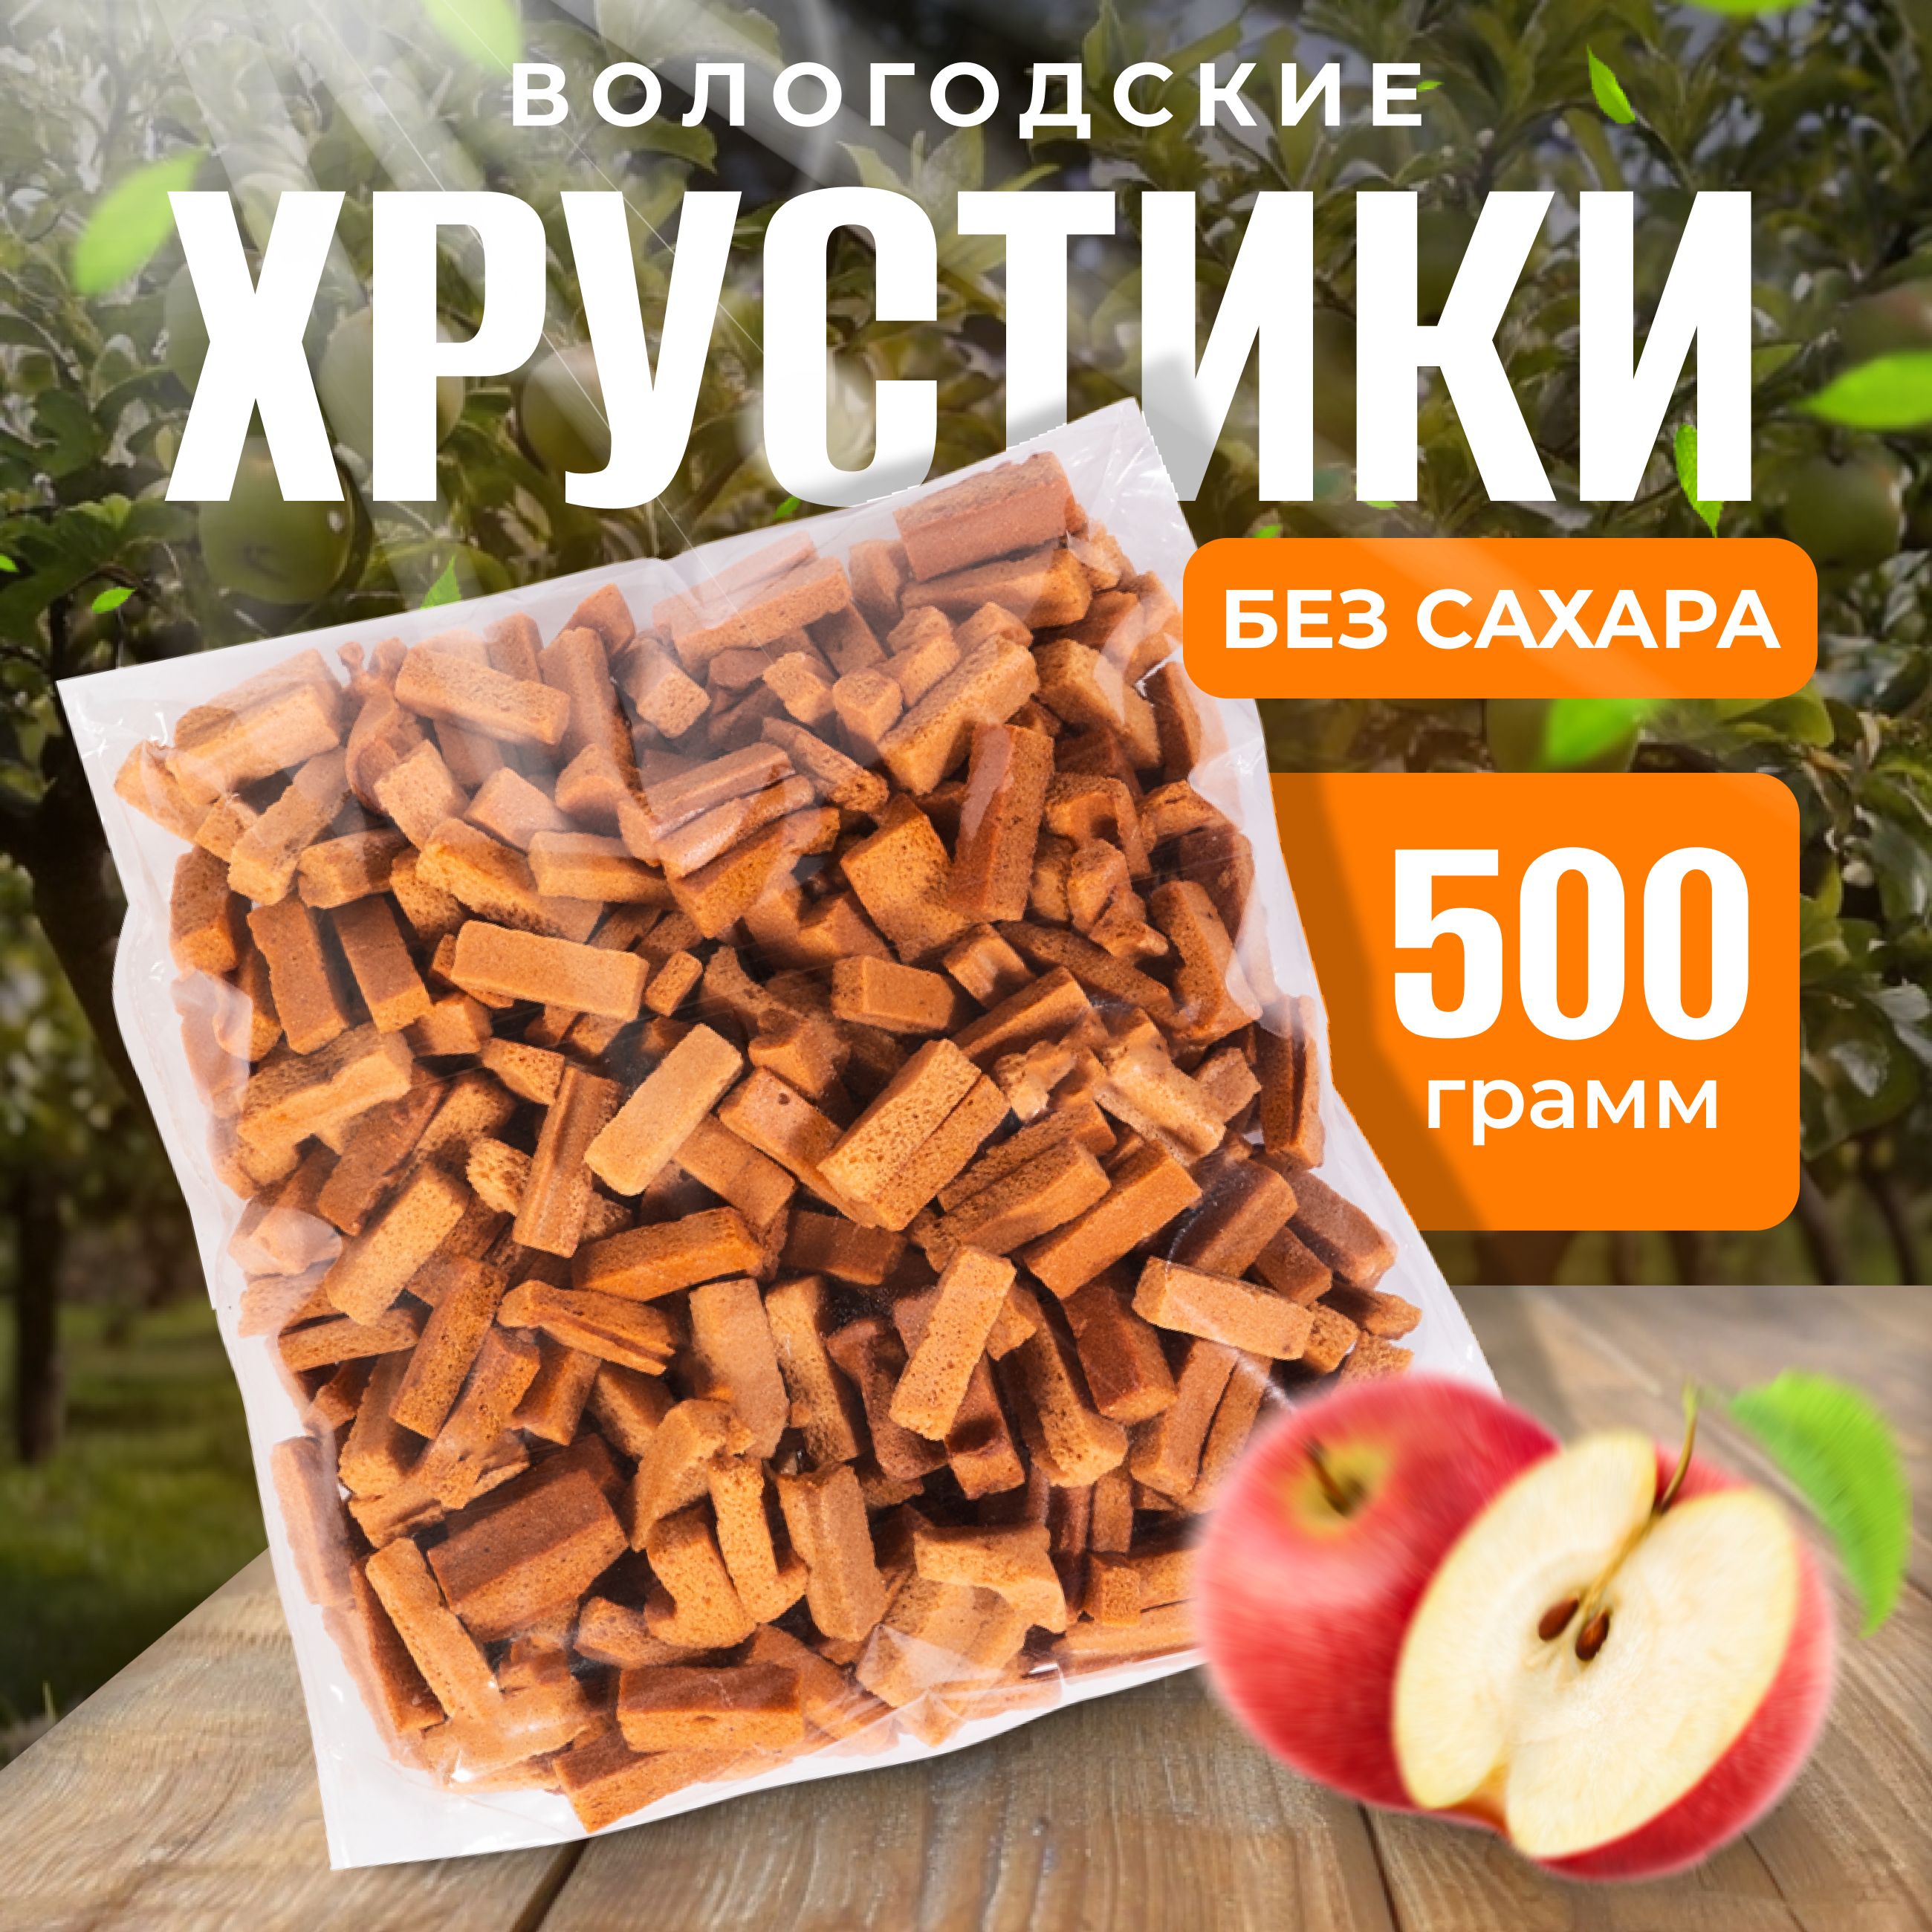 ЯблочныехрустикиВологодскиебезсахара500г